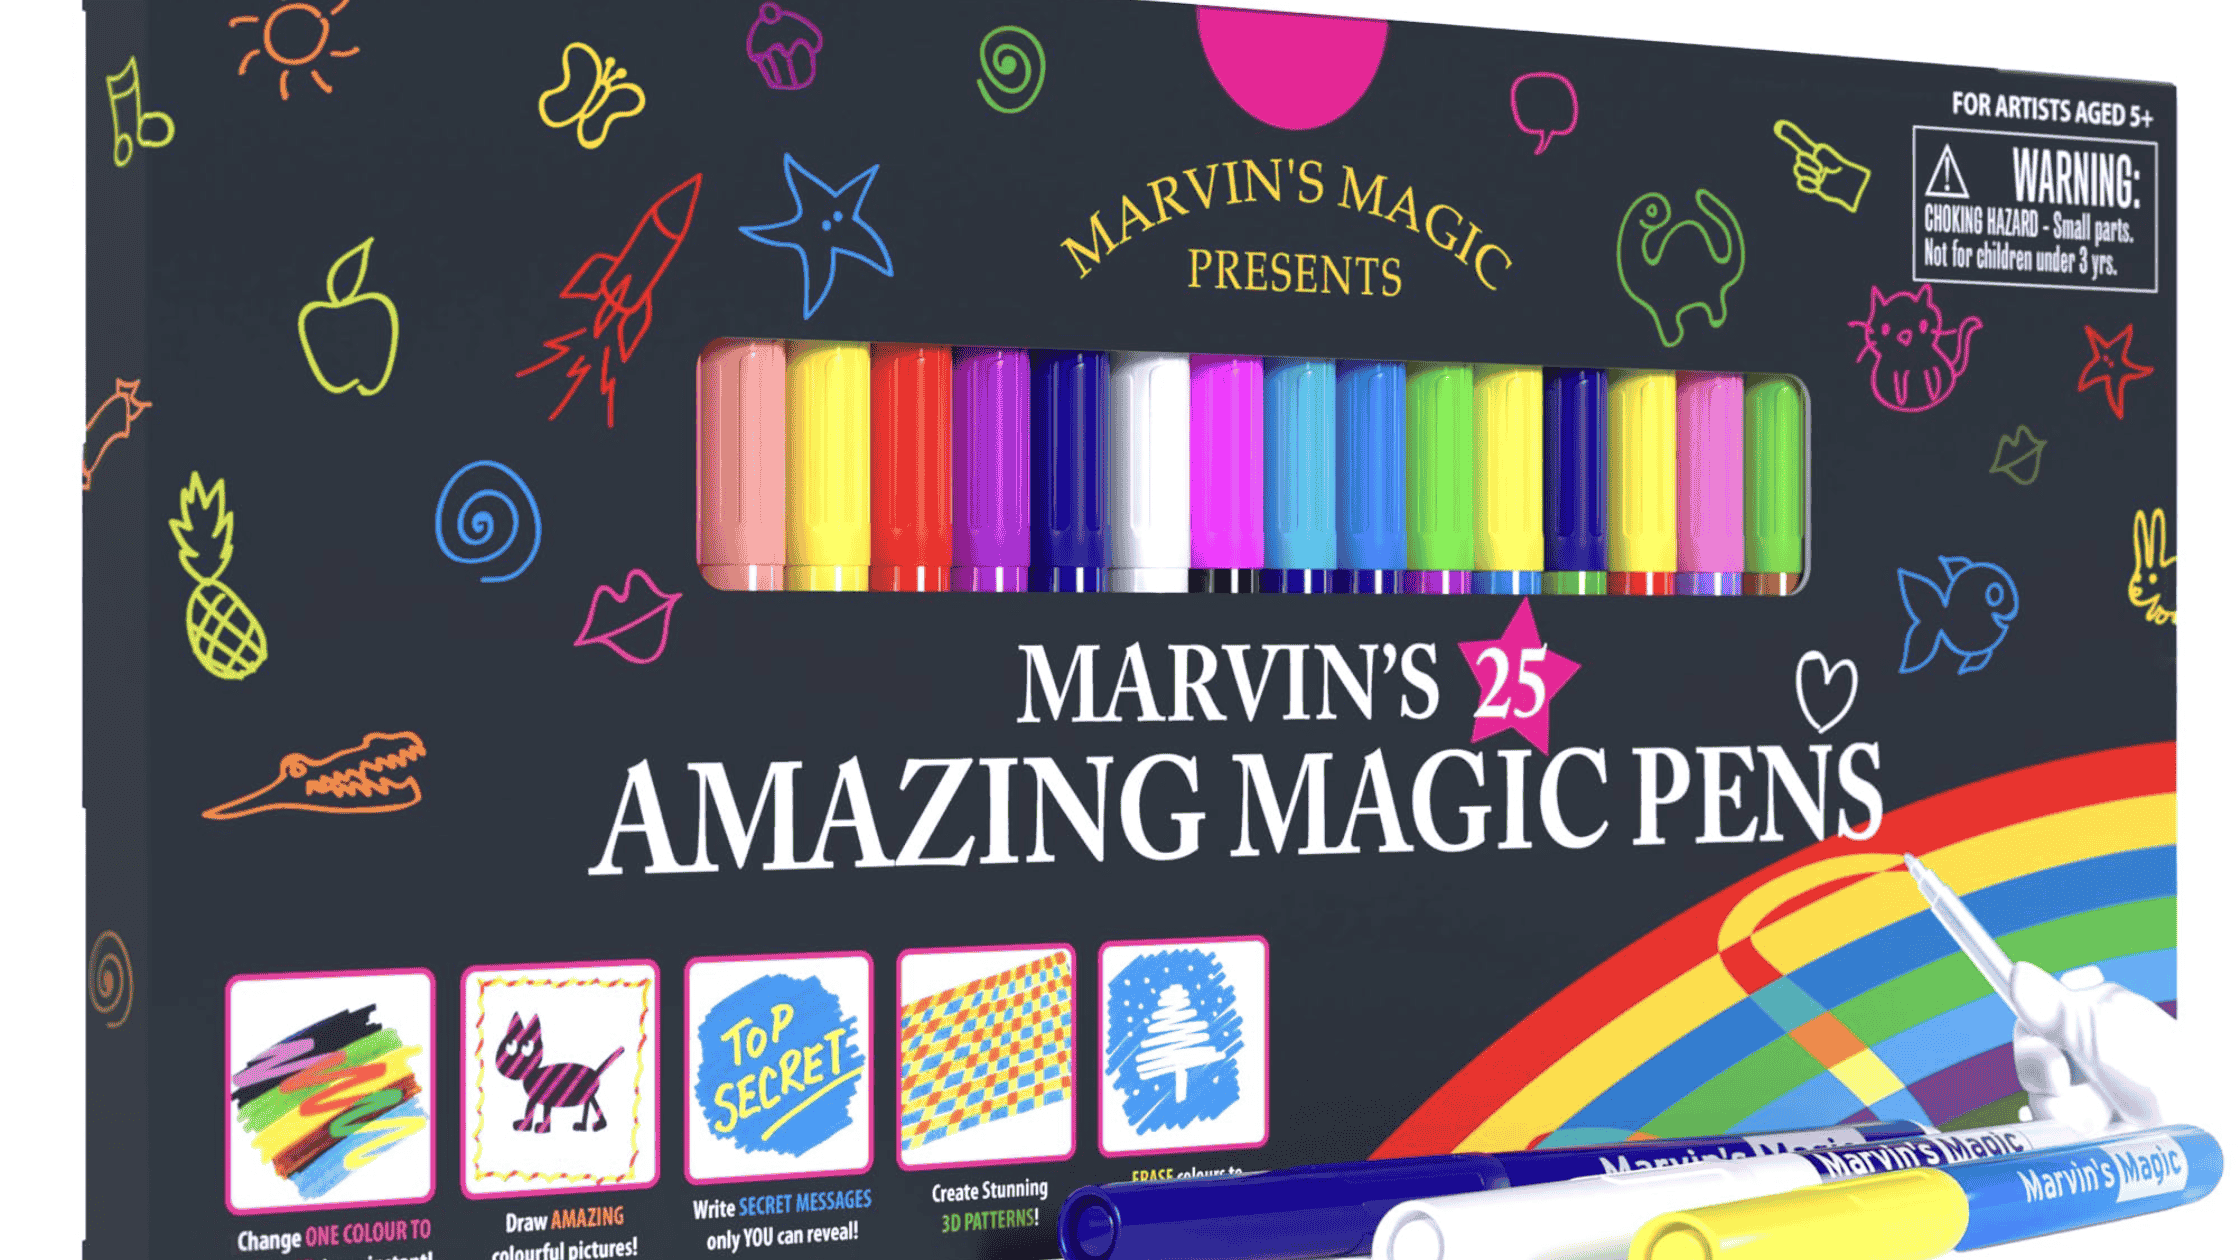 Marvin's Magic Pens